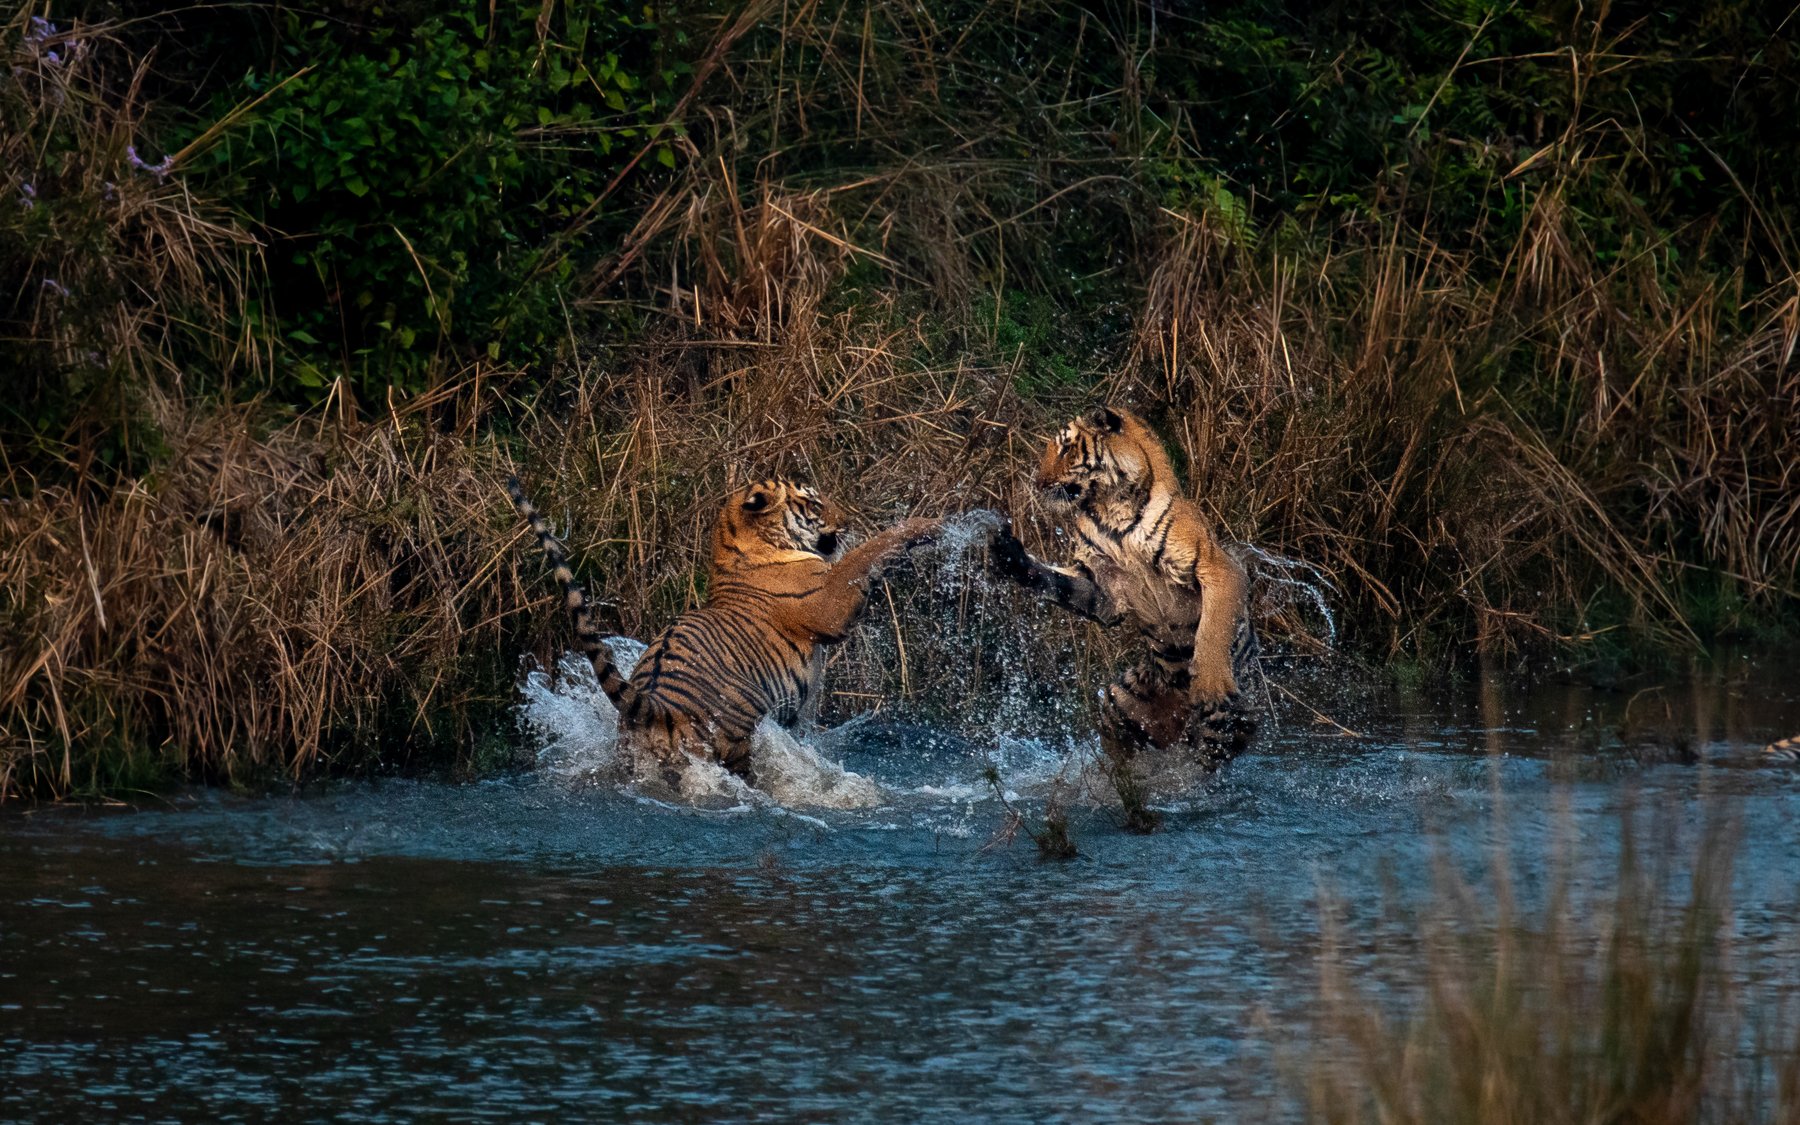 tiger tigers tigress subadult cubs juvenile corbett india playing fighting playfight, Nabarun Majumdar